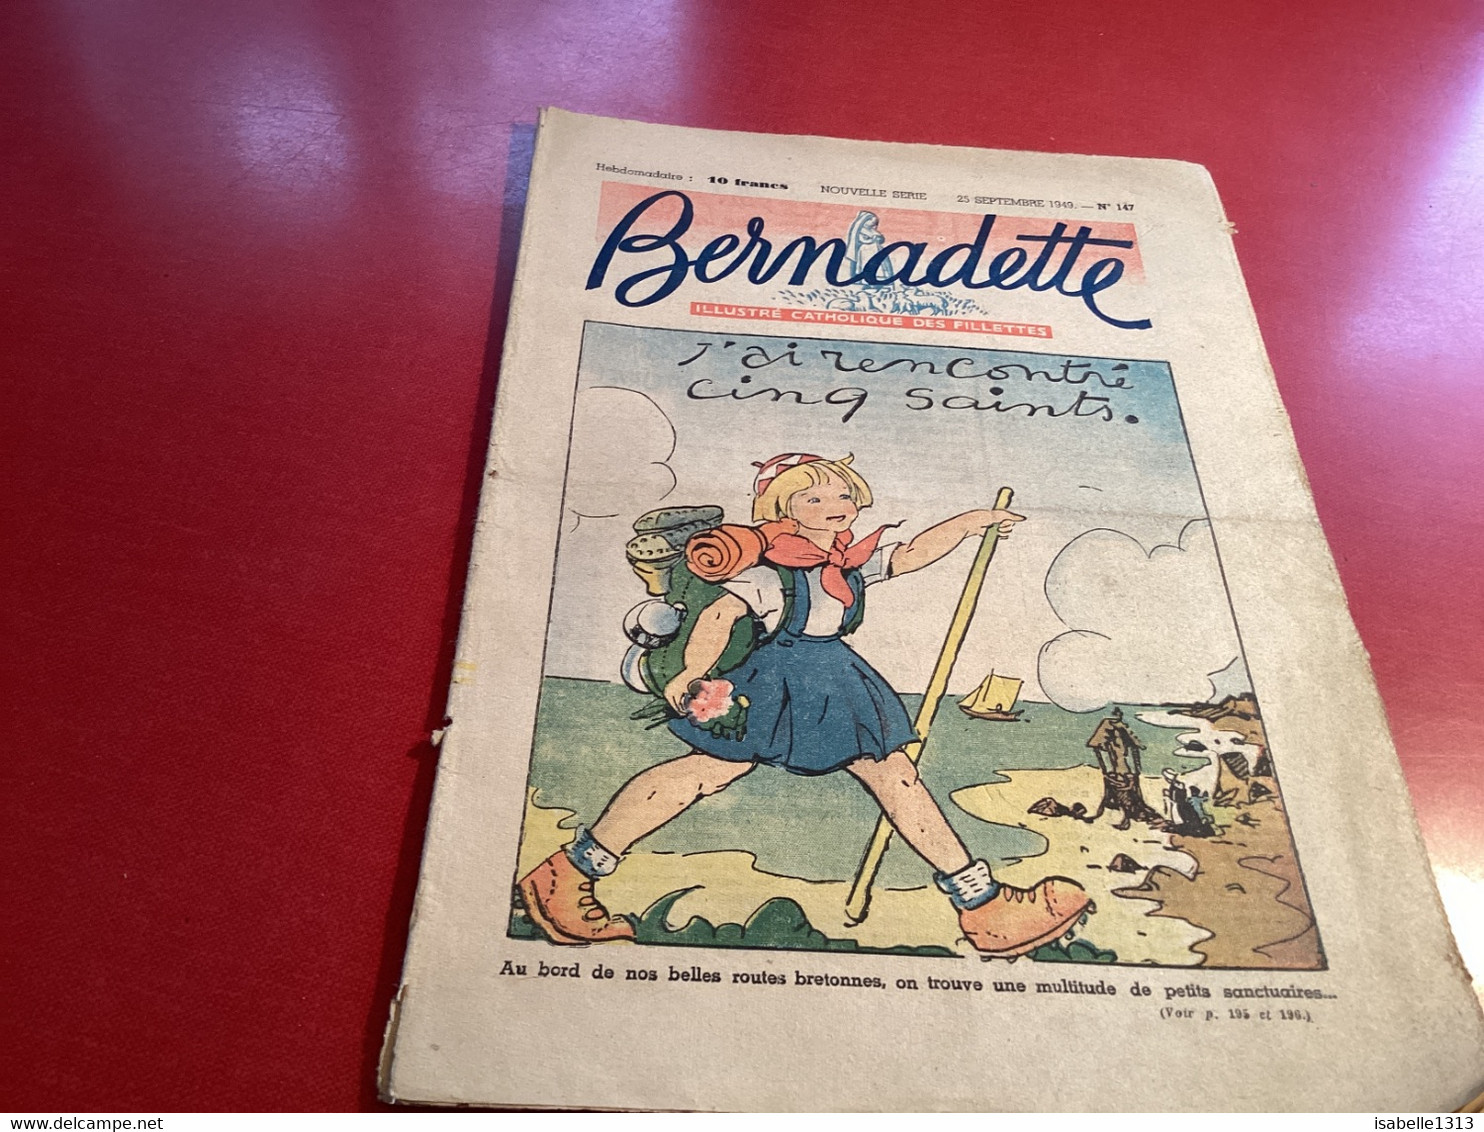 Bernadette Rare Revue Hebdomadaire Illustrée 1950 Dessin Signé Par Un  Illustrateur - Bernadette